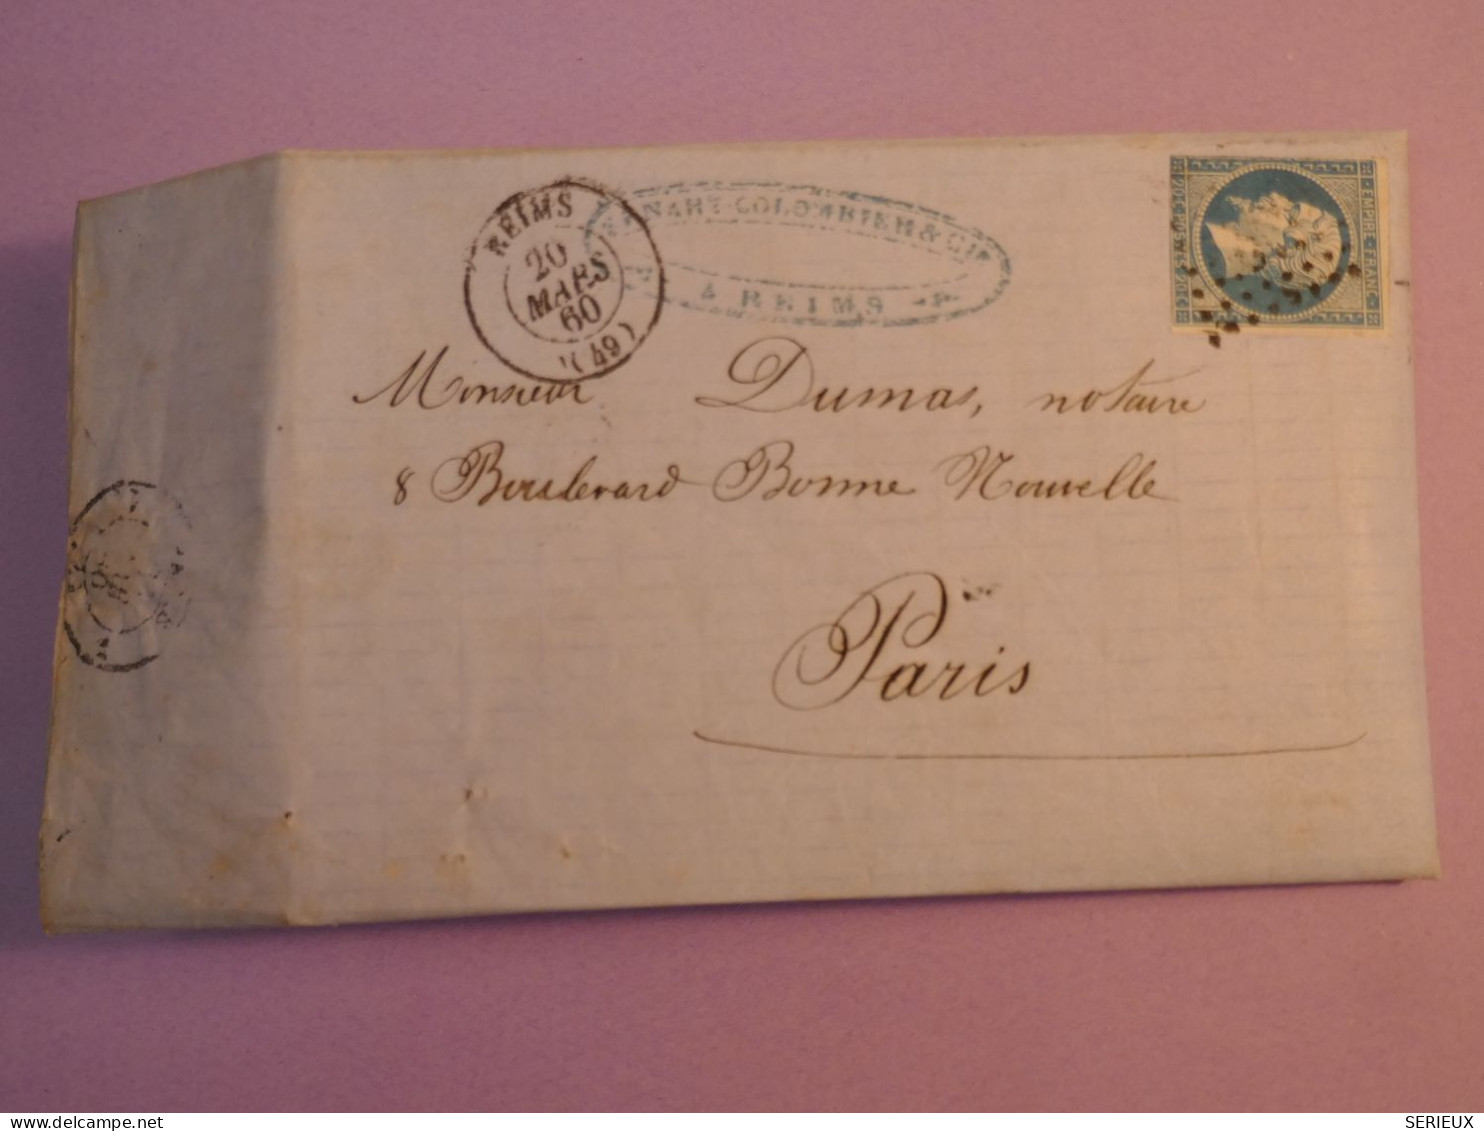 BY18 FRANCE  BELLE  LETTRE  1860 REIMS  A PARIS ++ NAPOLEON N° 14 ++AFF. INTERESSANT ++ - 1853-1860 Napoleon III